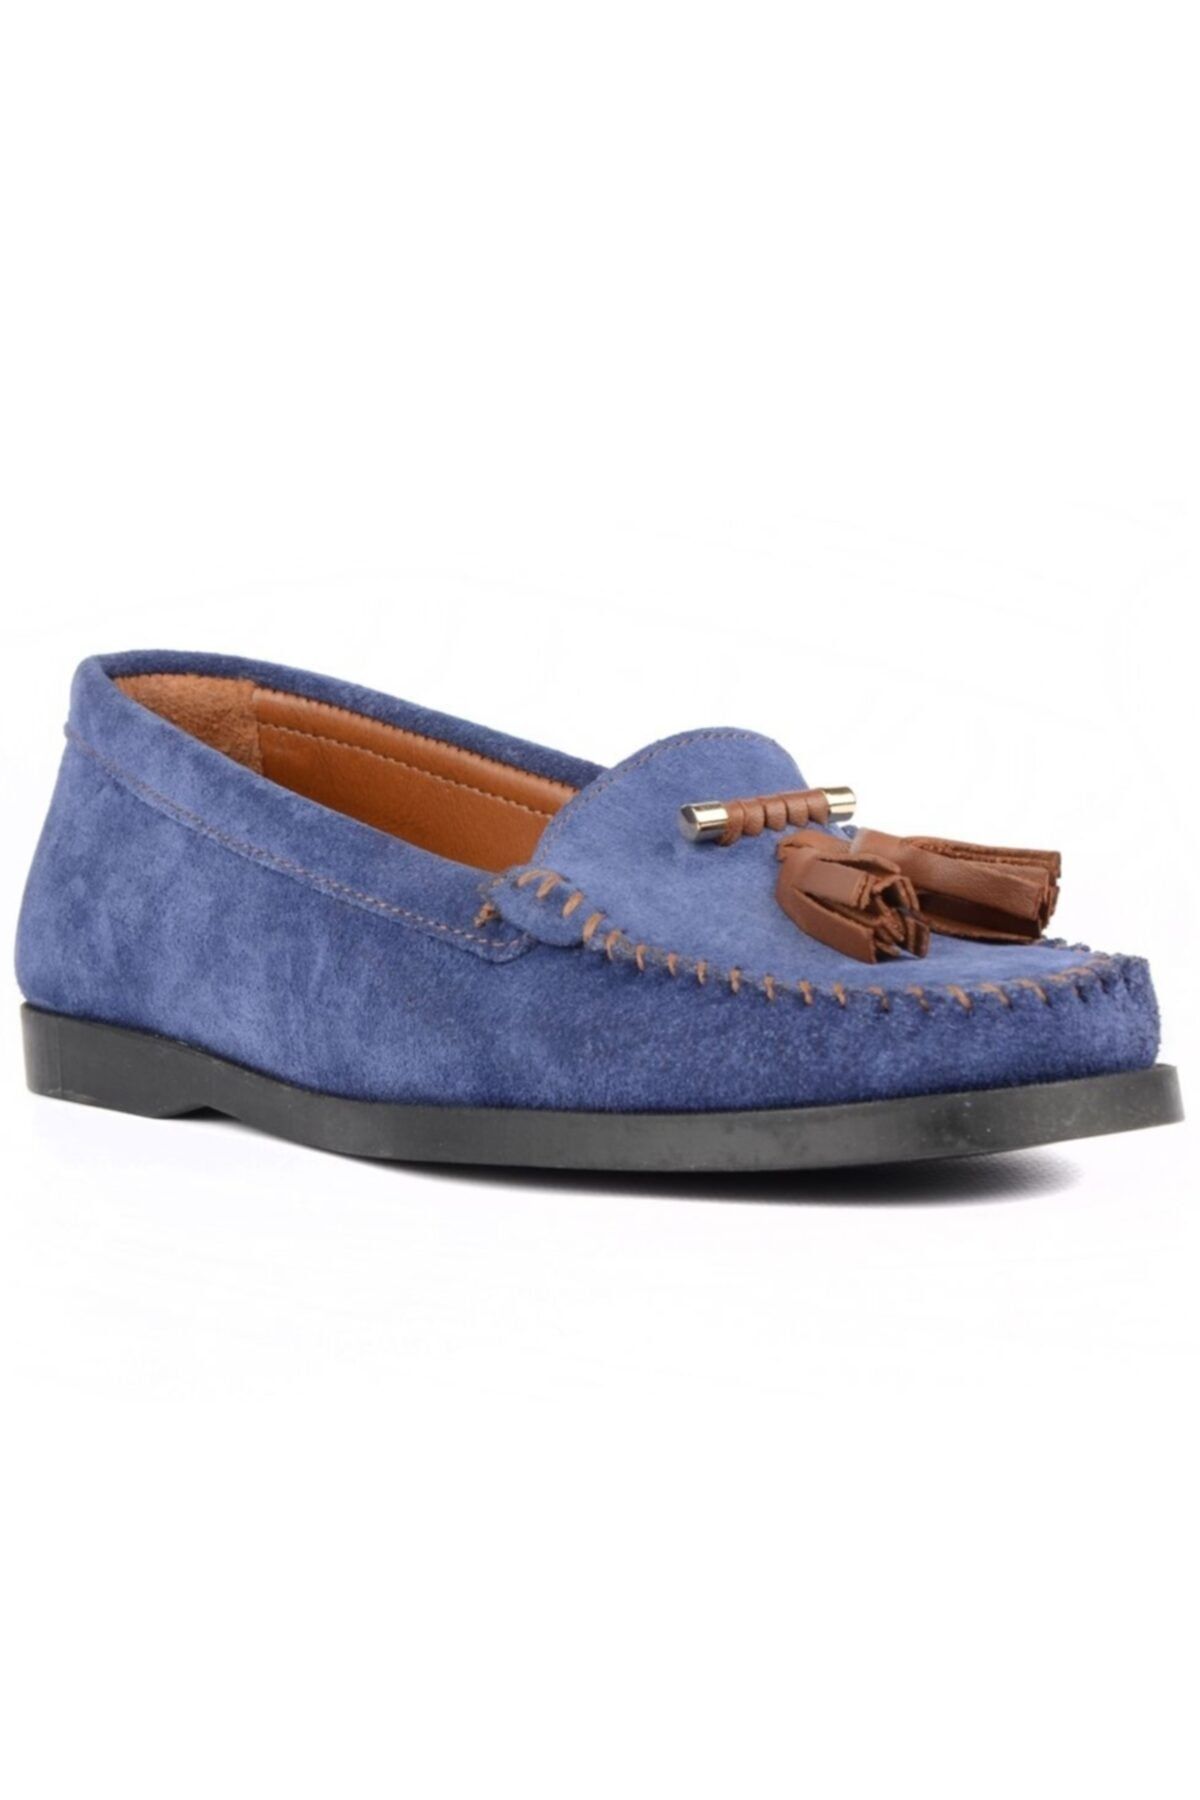 FootCourt Mavi Süet Kadın Günlük Ayakkabı